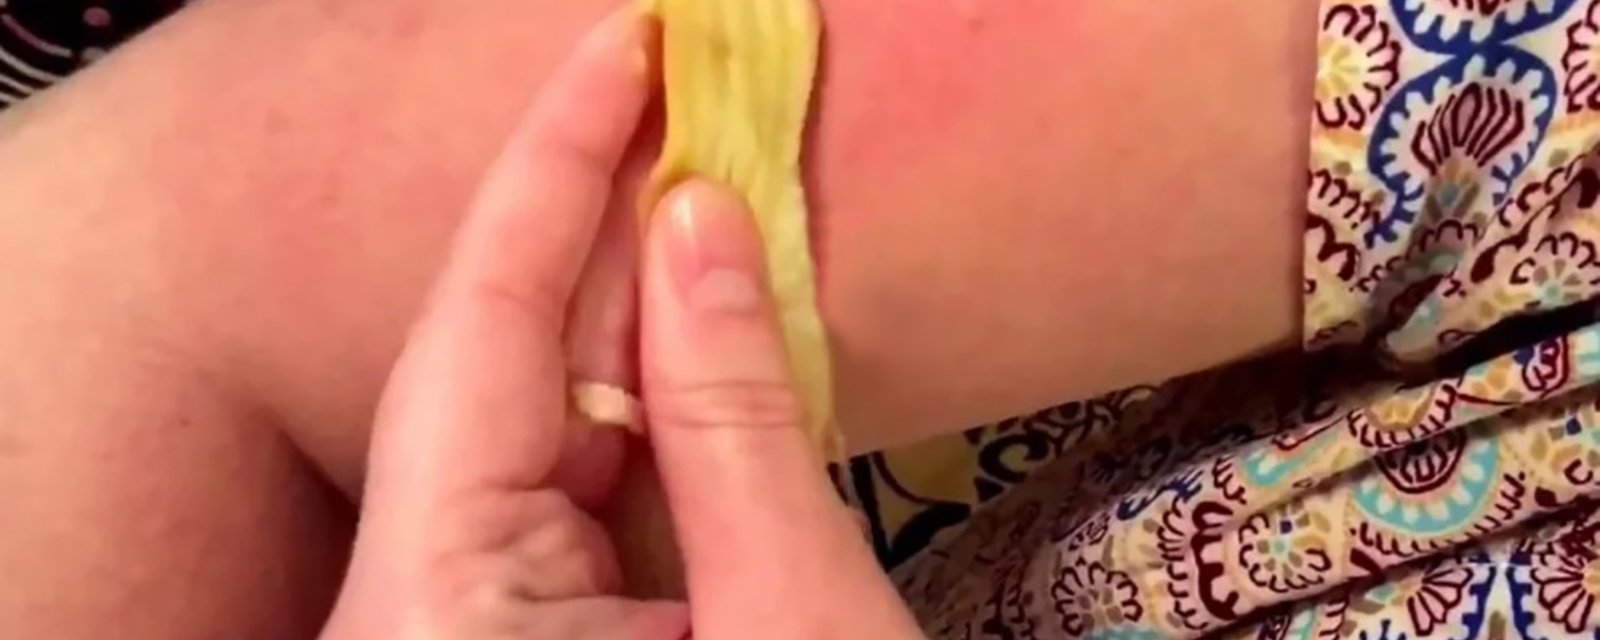 Elle frotte une pelure de banane sur sa peau...j'avais du mal à croire que le soulagement soit aussi rapide!